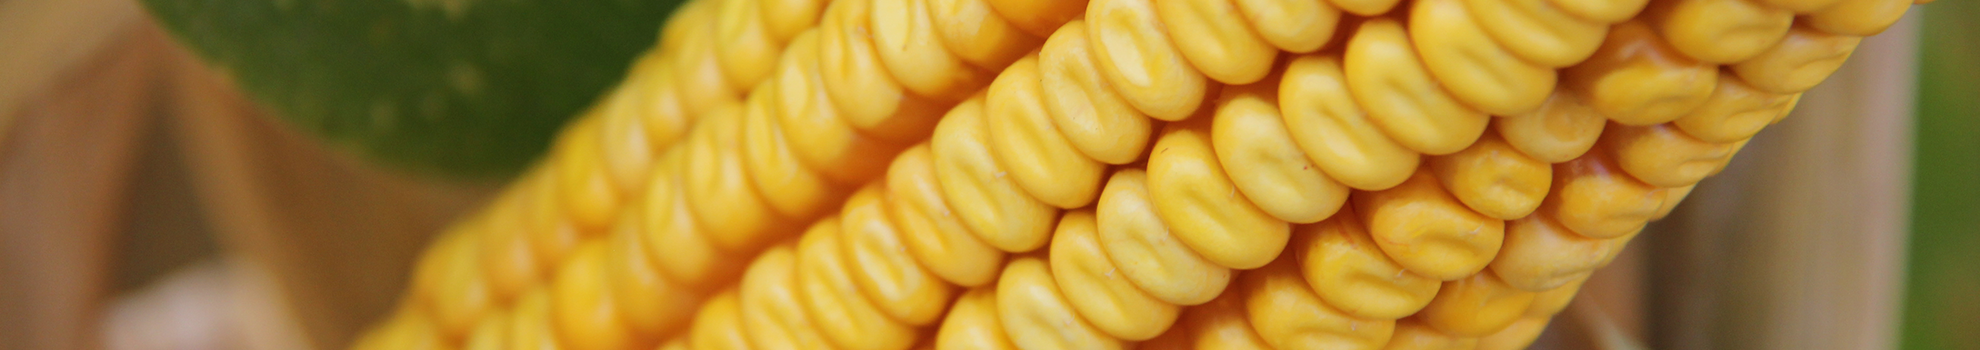 Grain maize